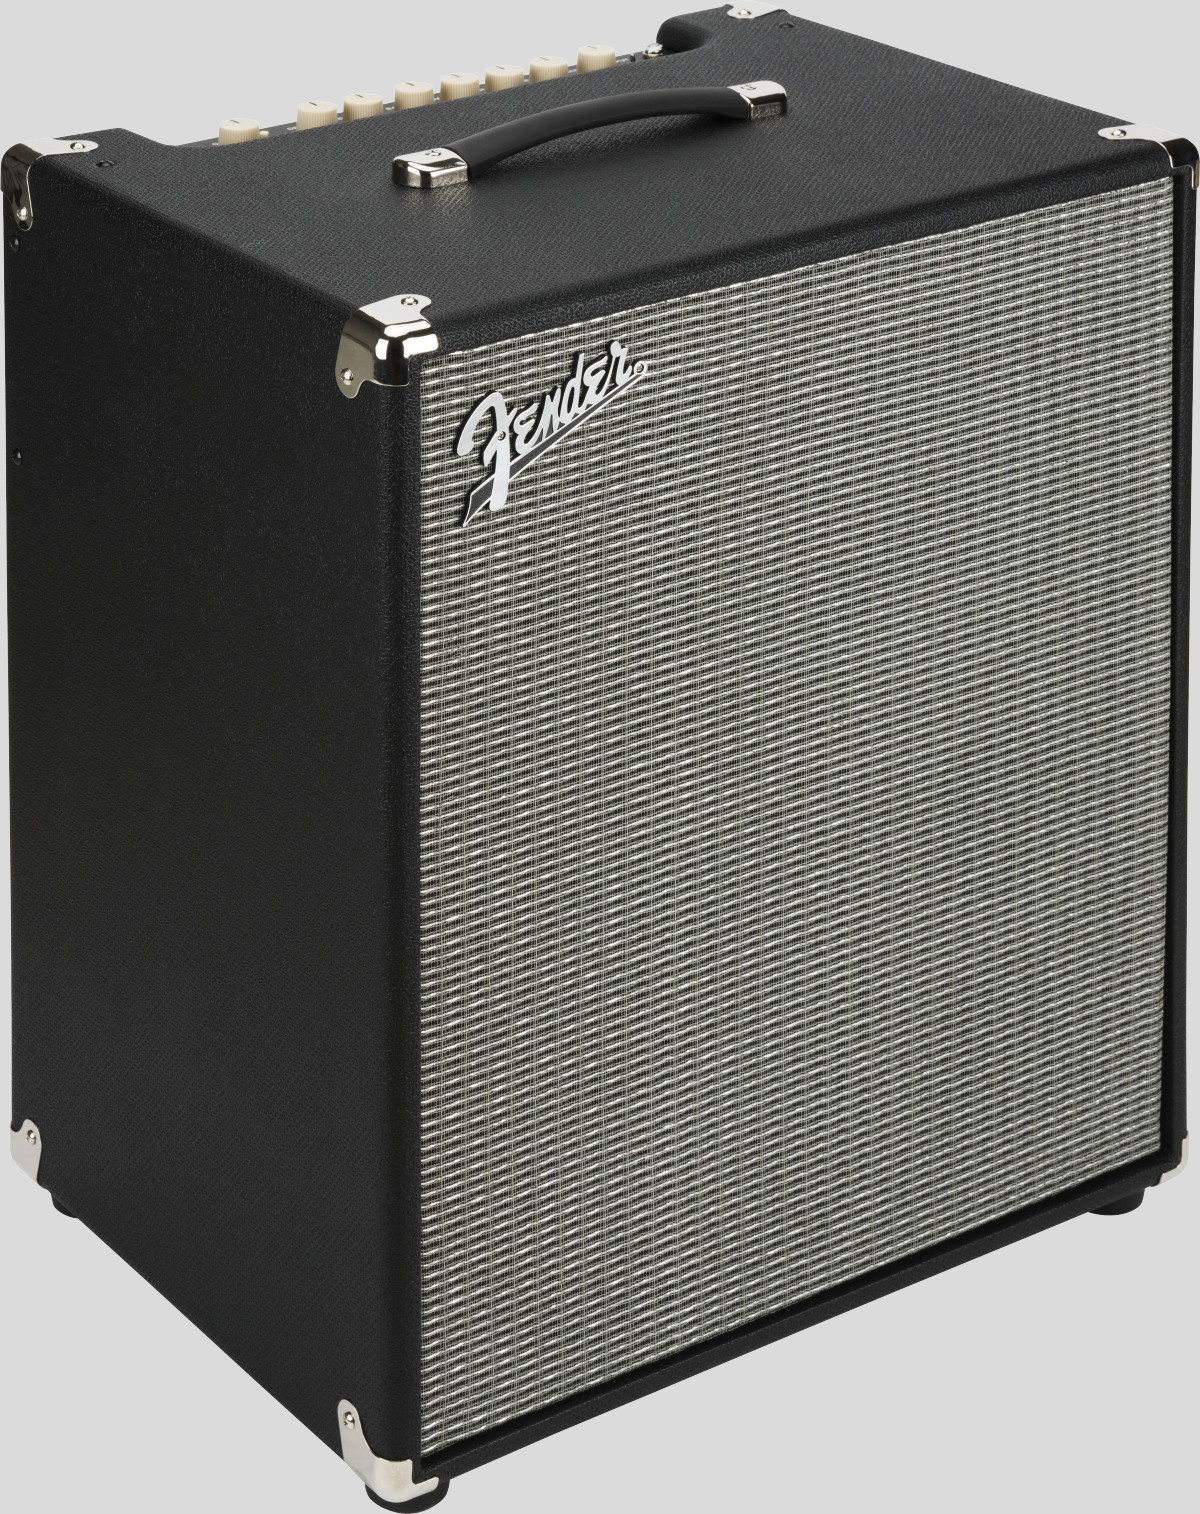 Fender Rumble 800 V3 3